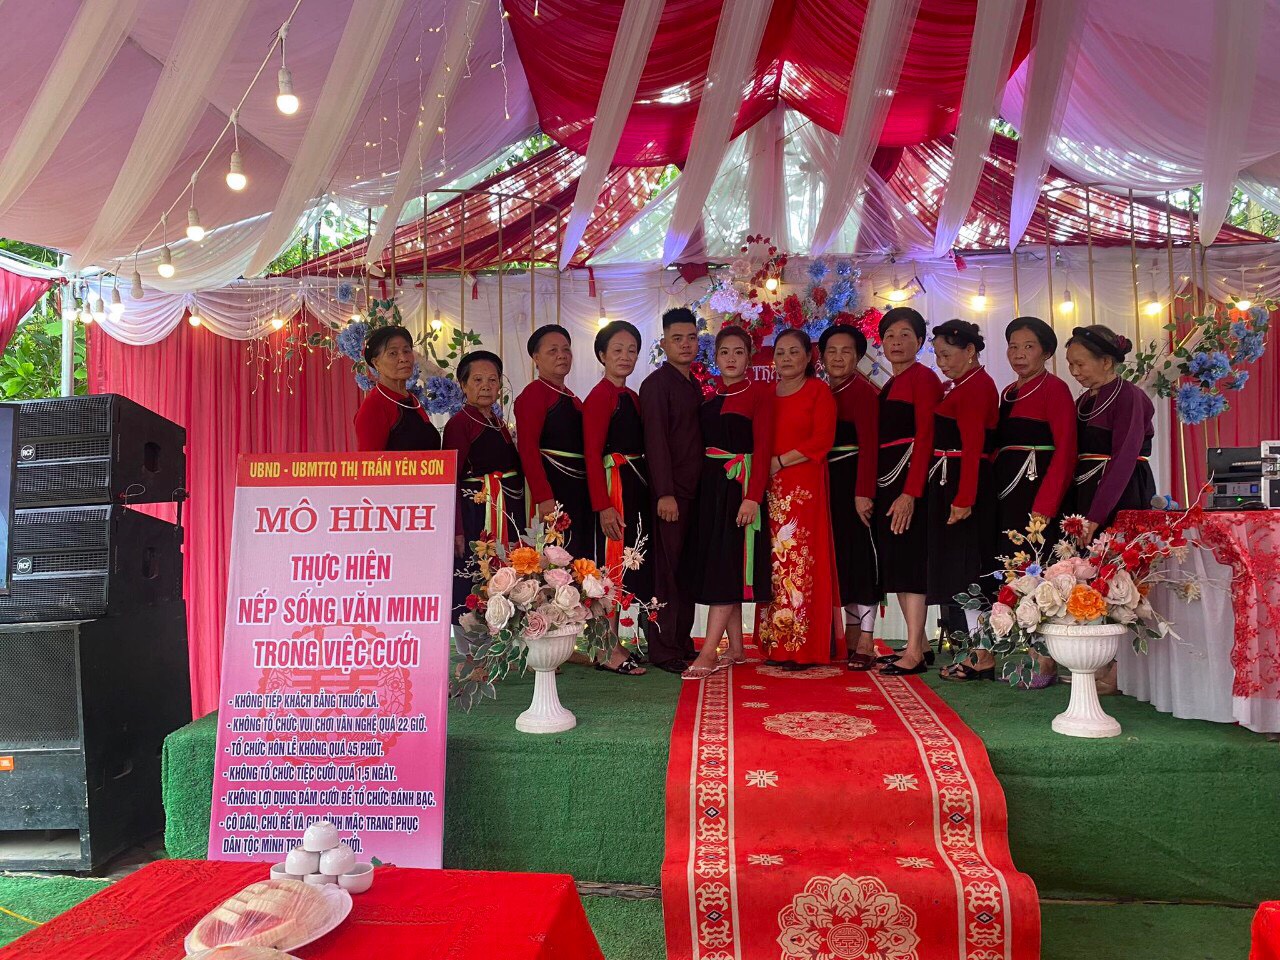 Văn minh trong việc cưới tại tổ dân phố Đồng Quân, thị trấn Yên Sơn